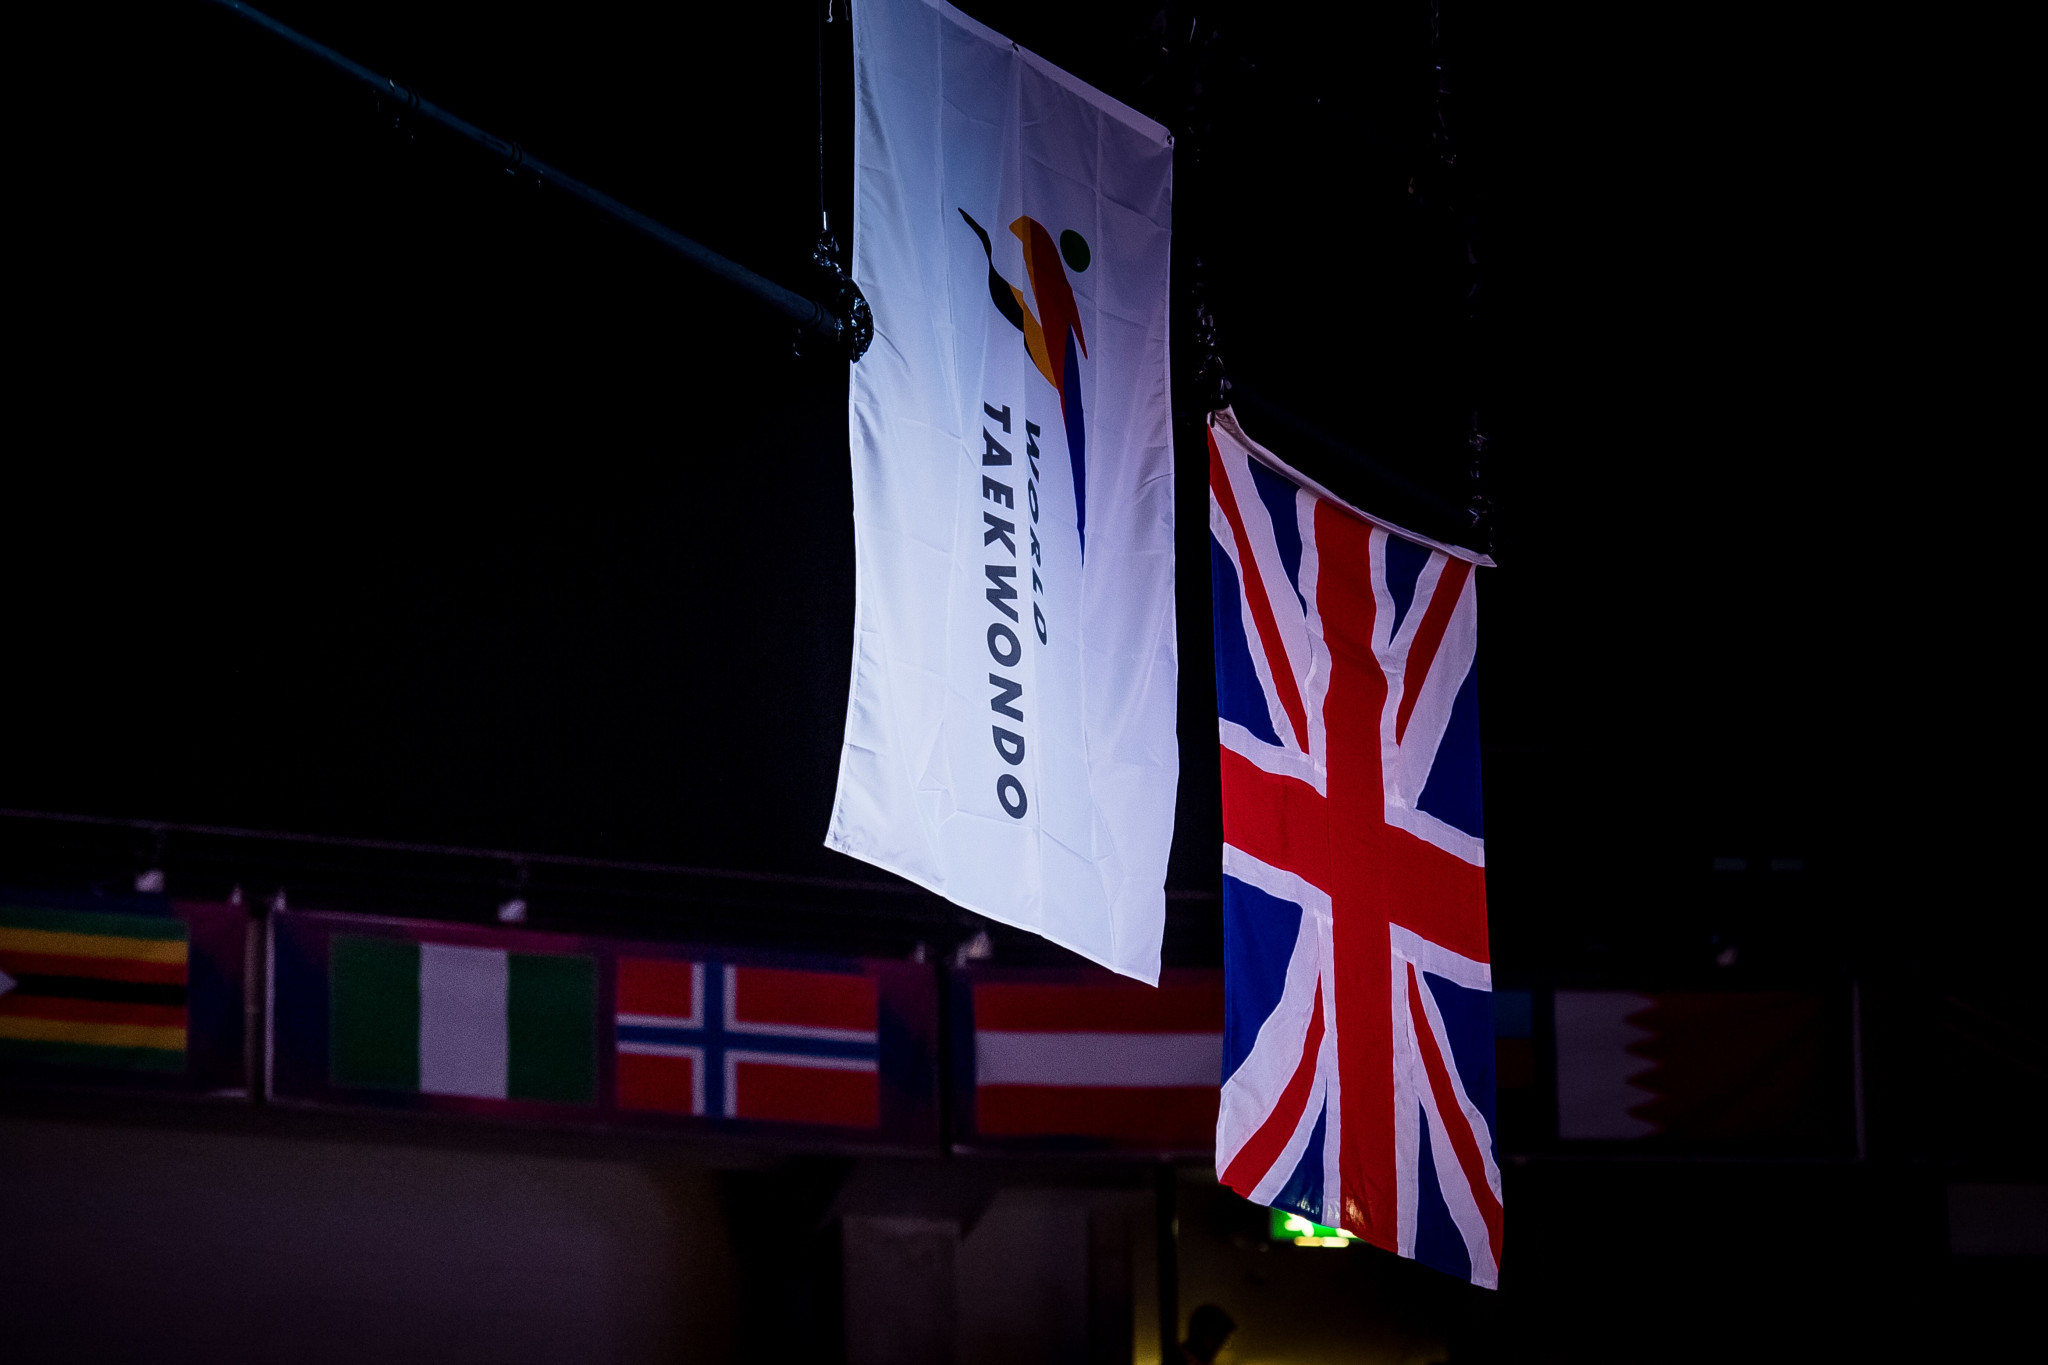 A refugee team is competing under the World Taekwondo flag at the World Championships ©World Taekwondo